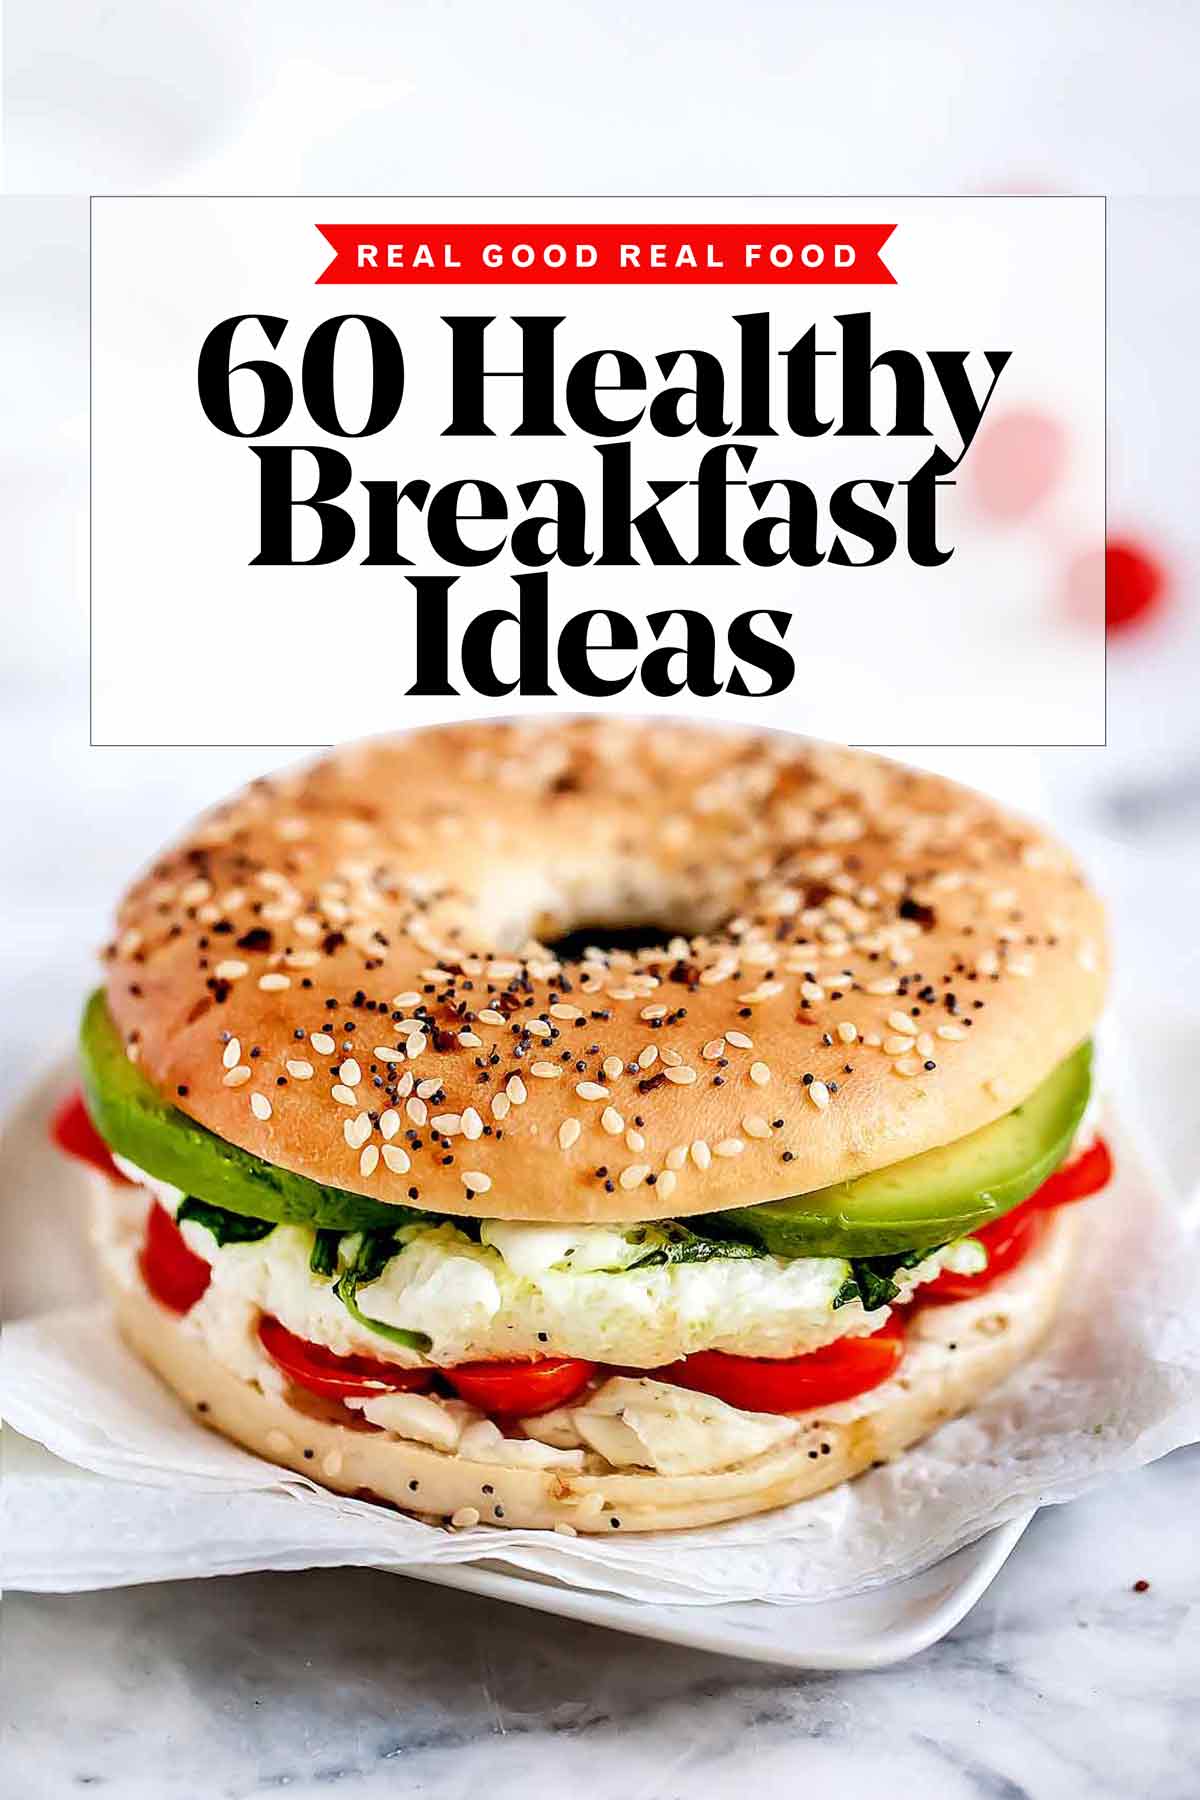 Healthy Breakfast Food Images